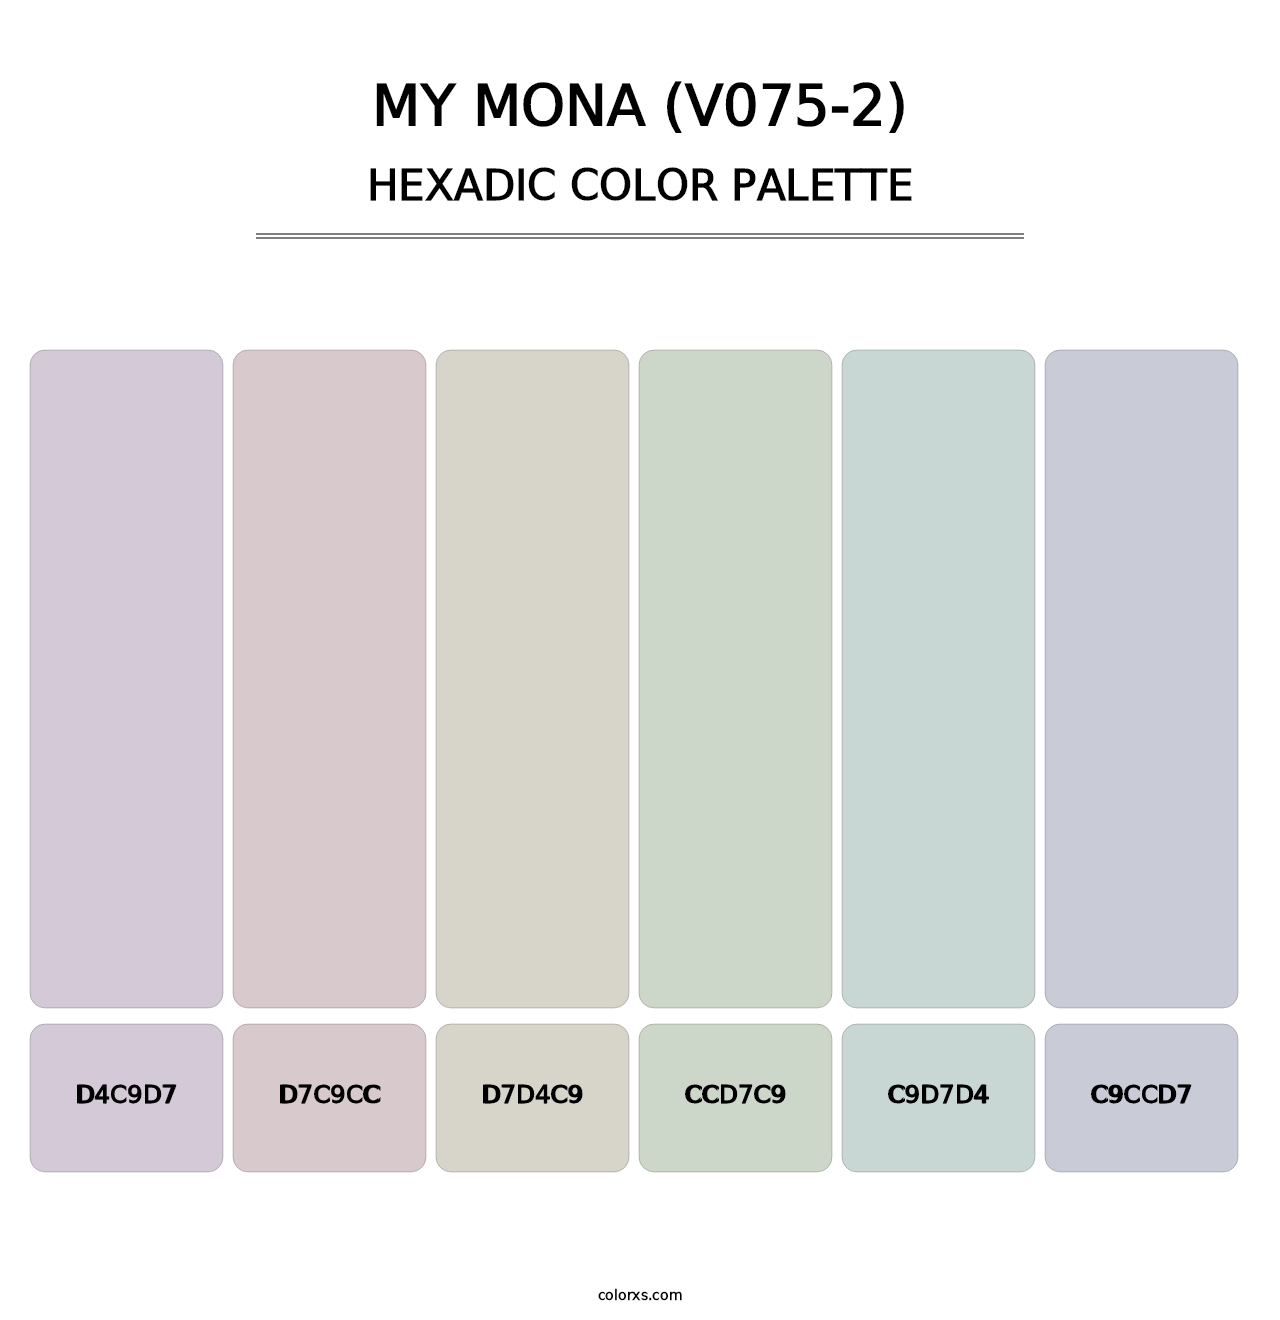 My Mona (V075-2) - Hexadic Color Palette